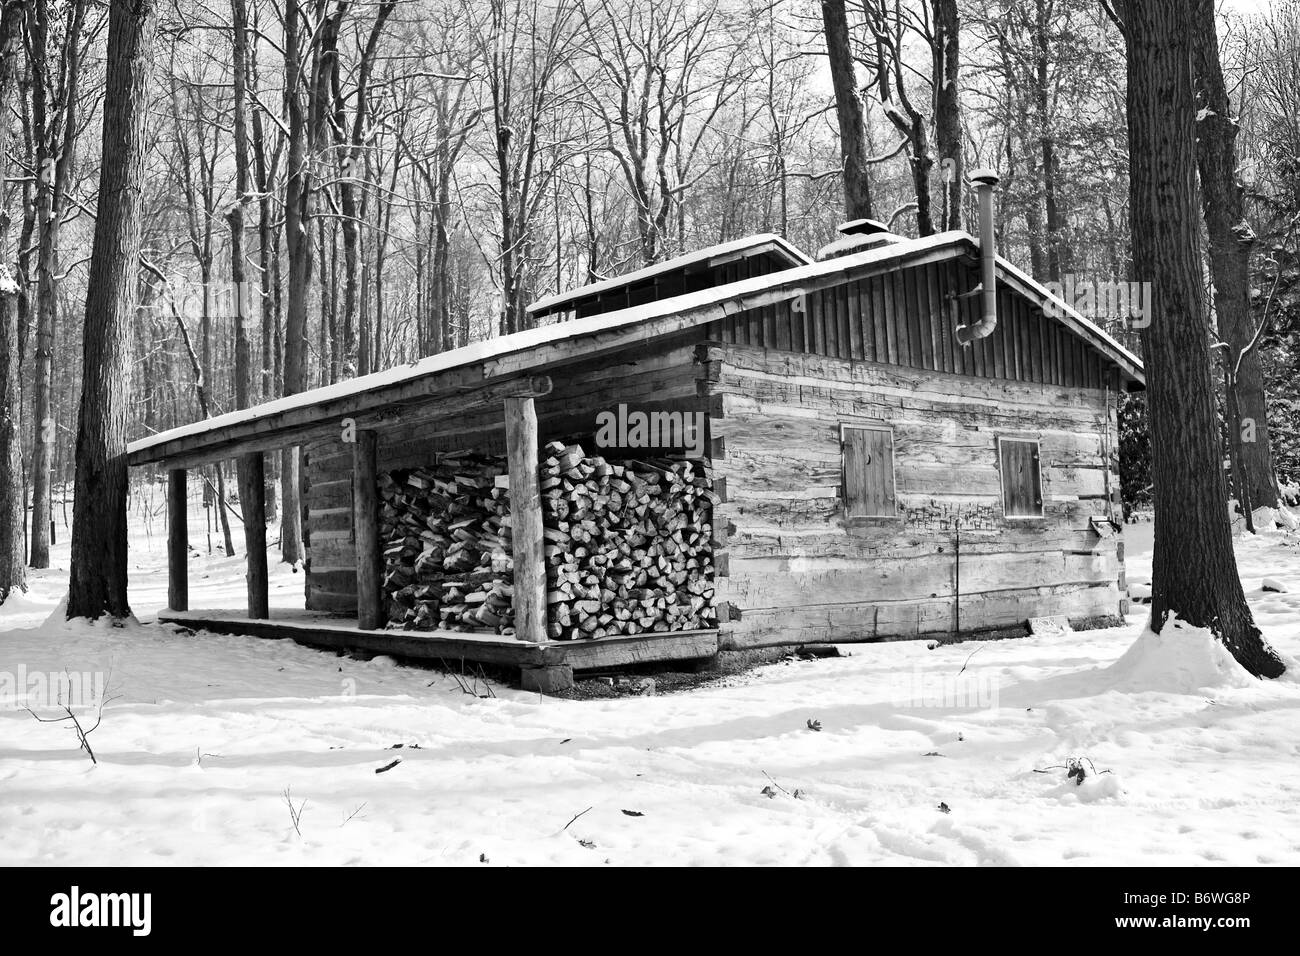 Hütte im wald im winter Schwarzweiß-Stockfotos und -bilder - Alamy